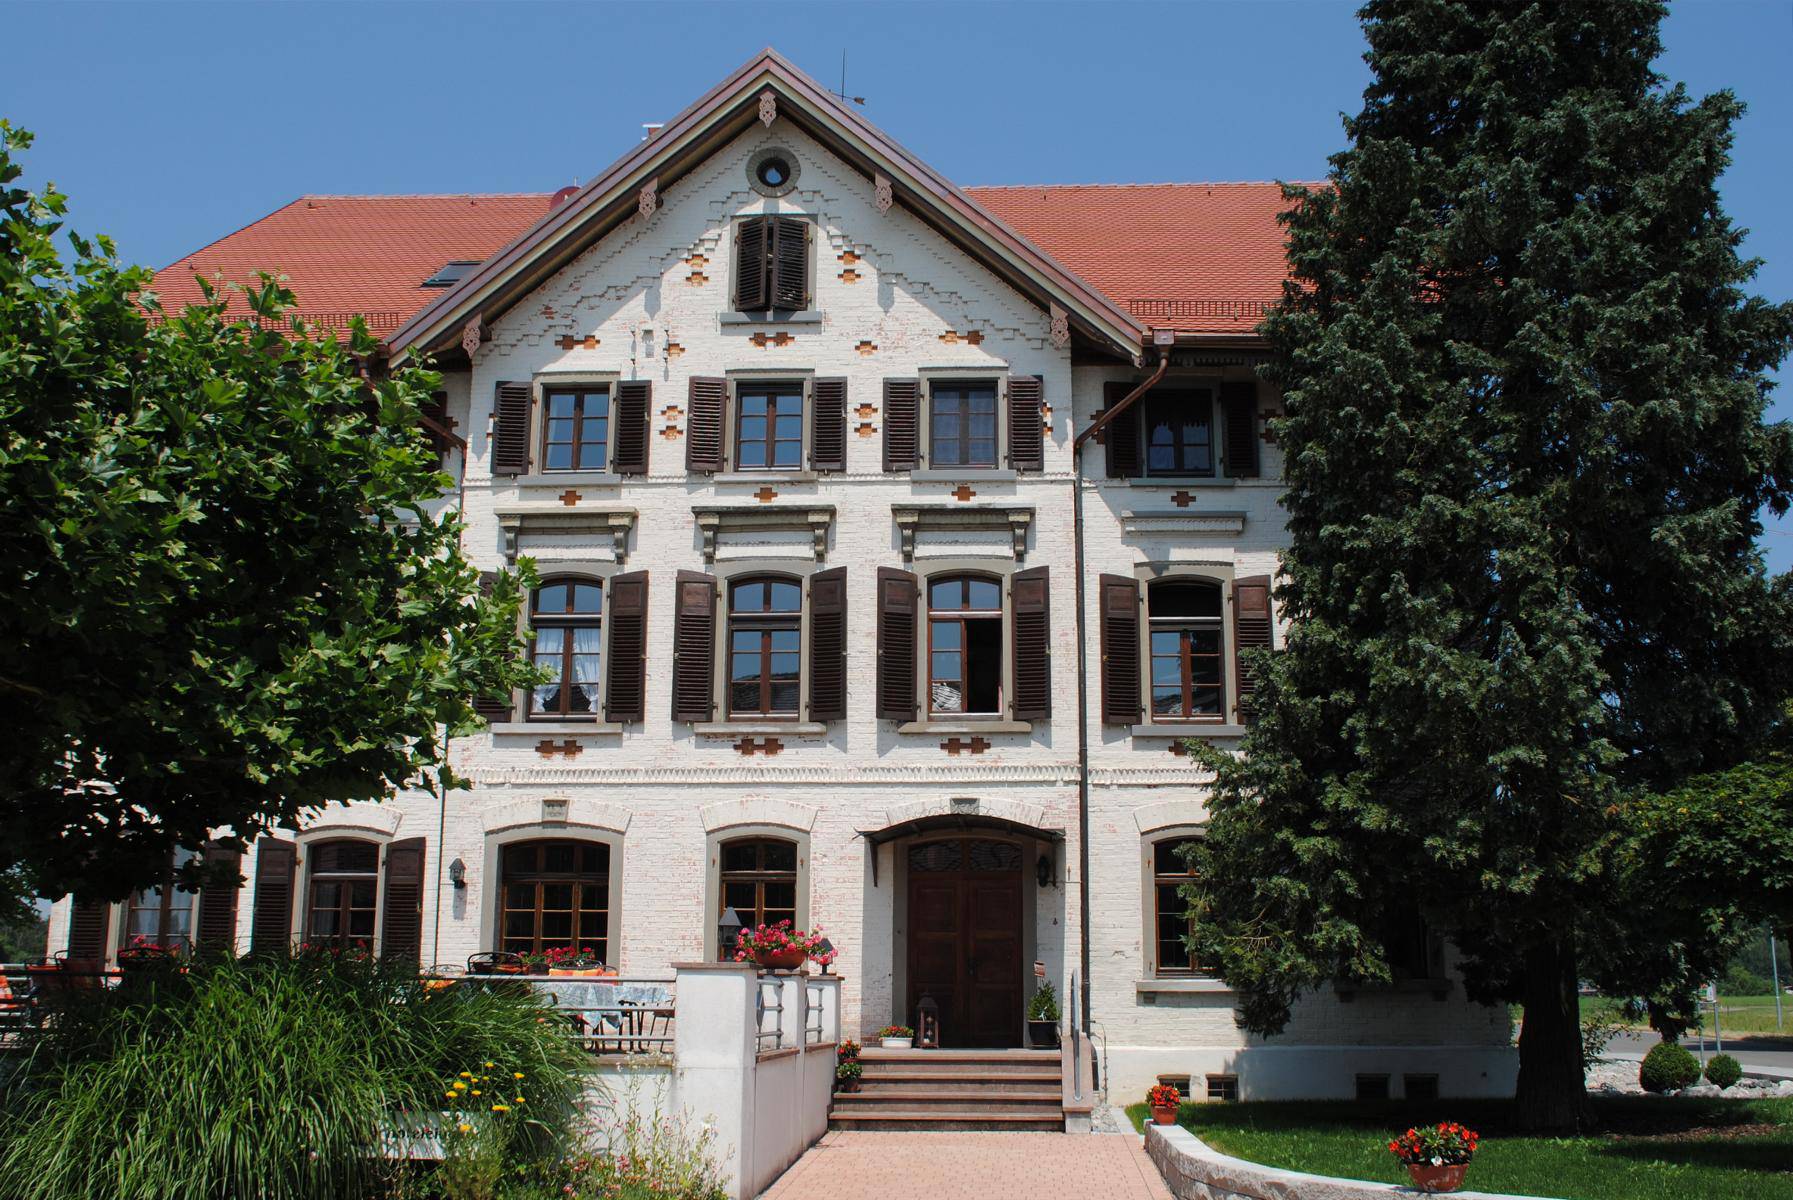 Landhaus Vier Jahreszeiten  - Hotel Garni in Eriskirch - Bild 1 - Hotel Bodensee